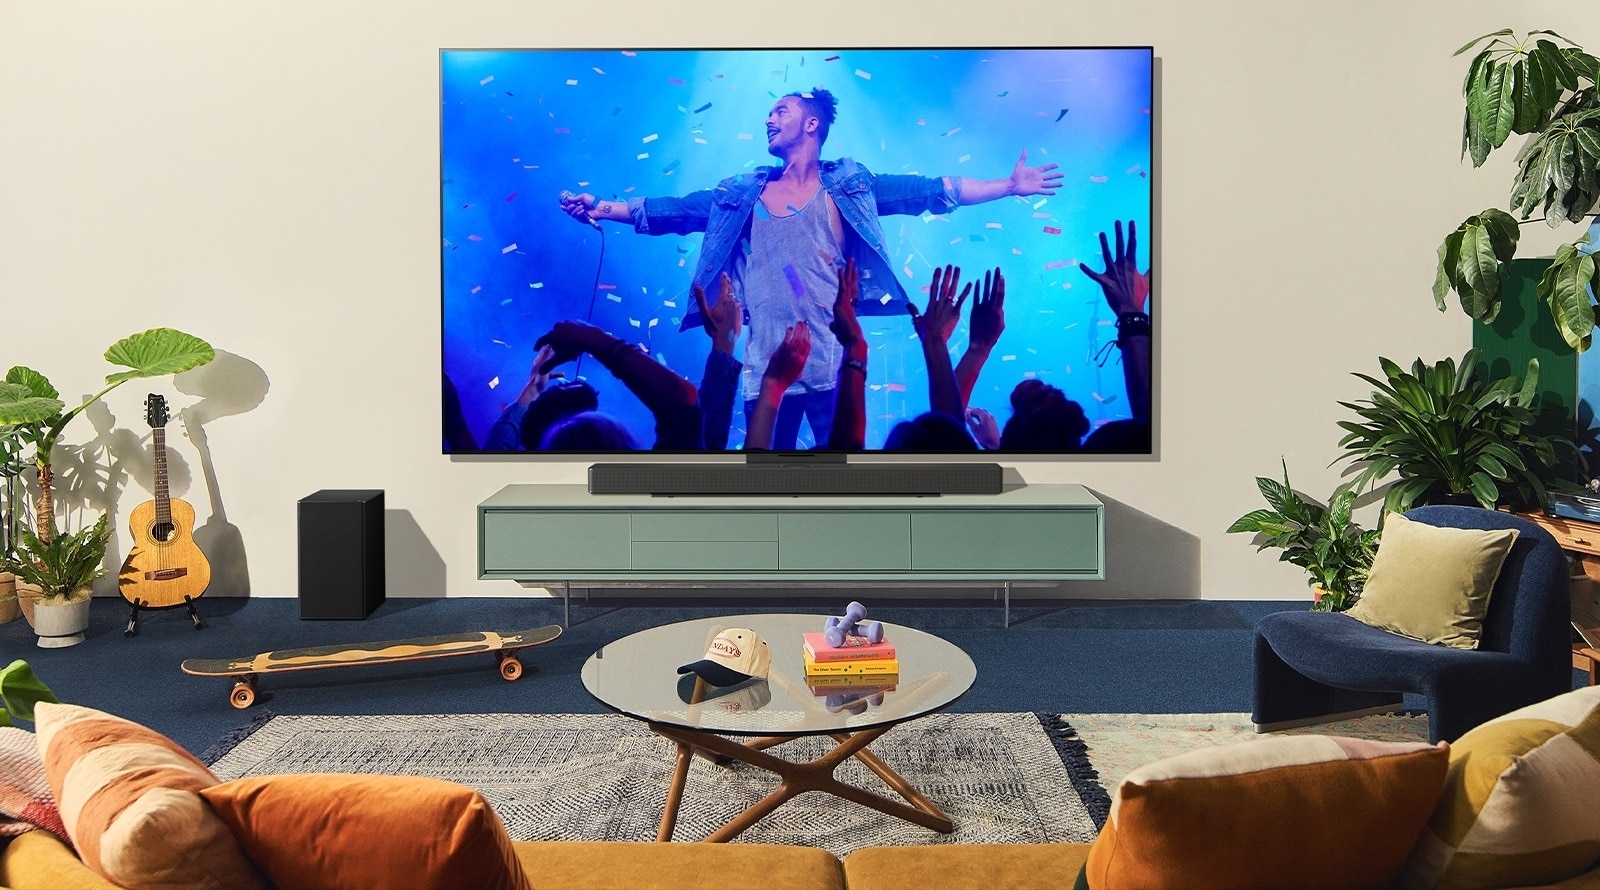 LG OLED TV in Soundbar, ki predstavljata sodobno hišo, sta usklajena z nosilcem Synergy..